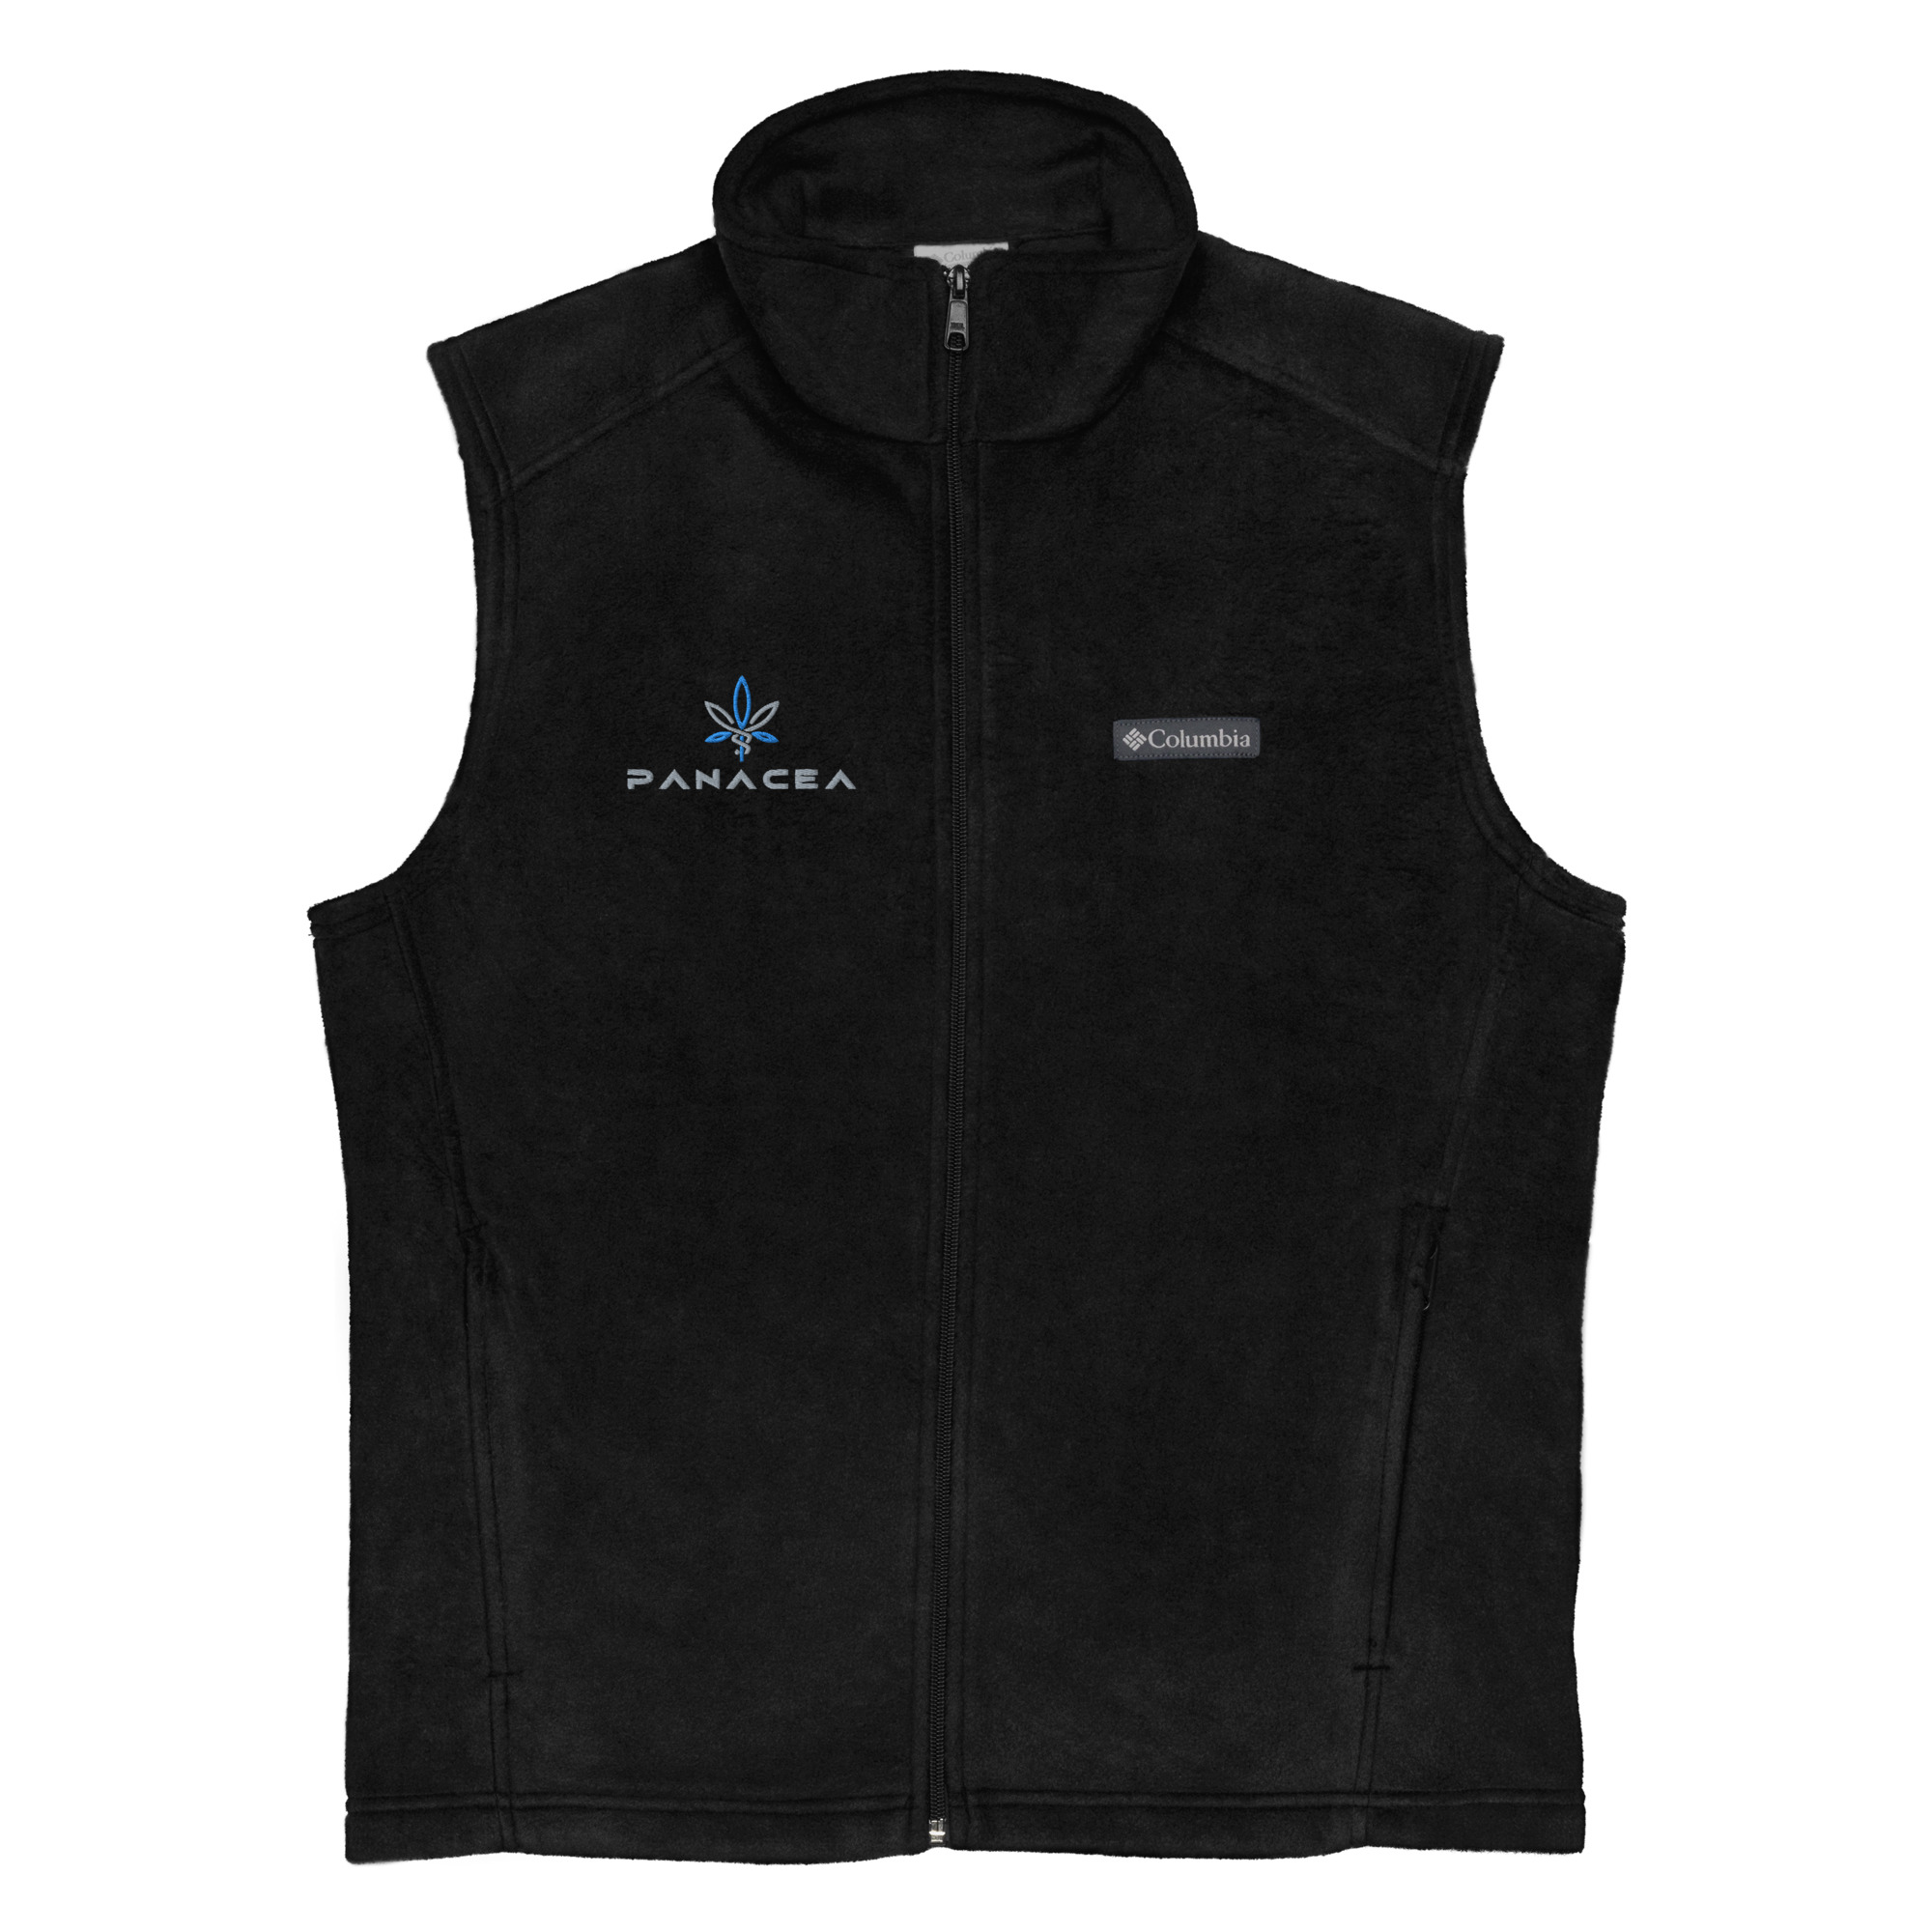 Men’s Columbia fleece vest – Panacea